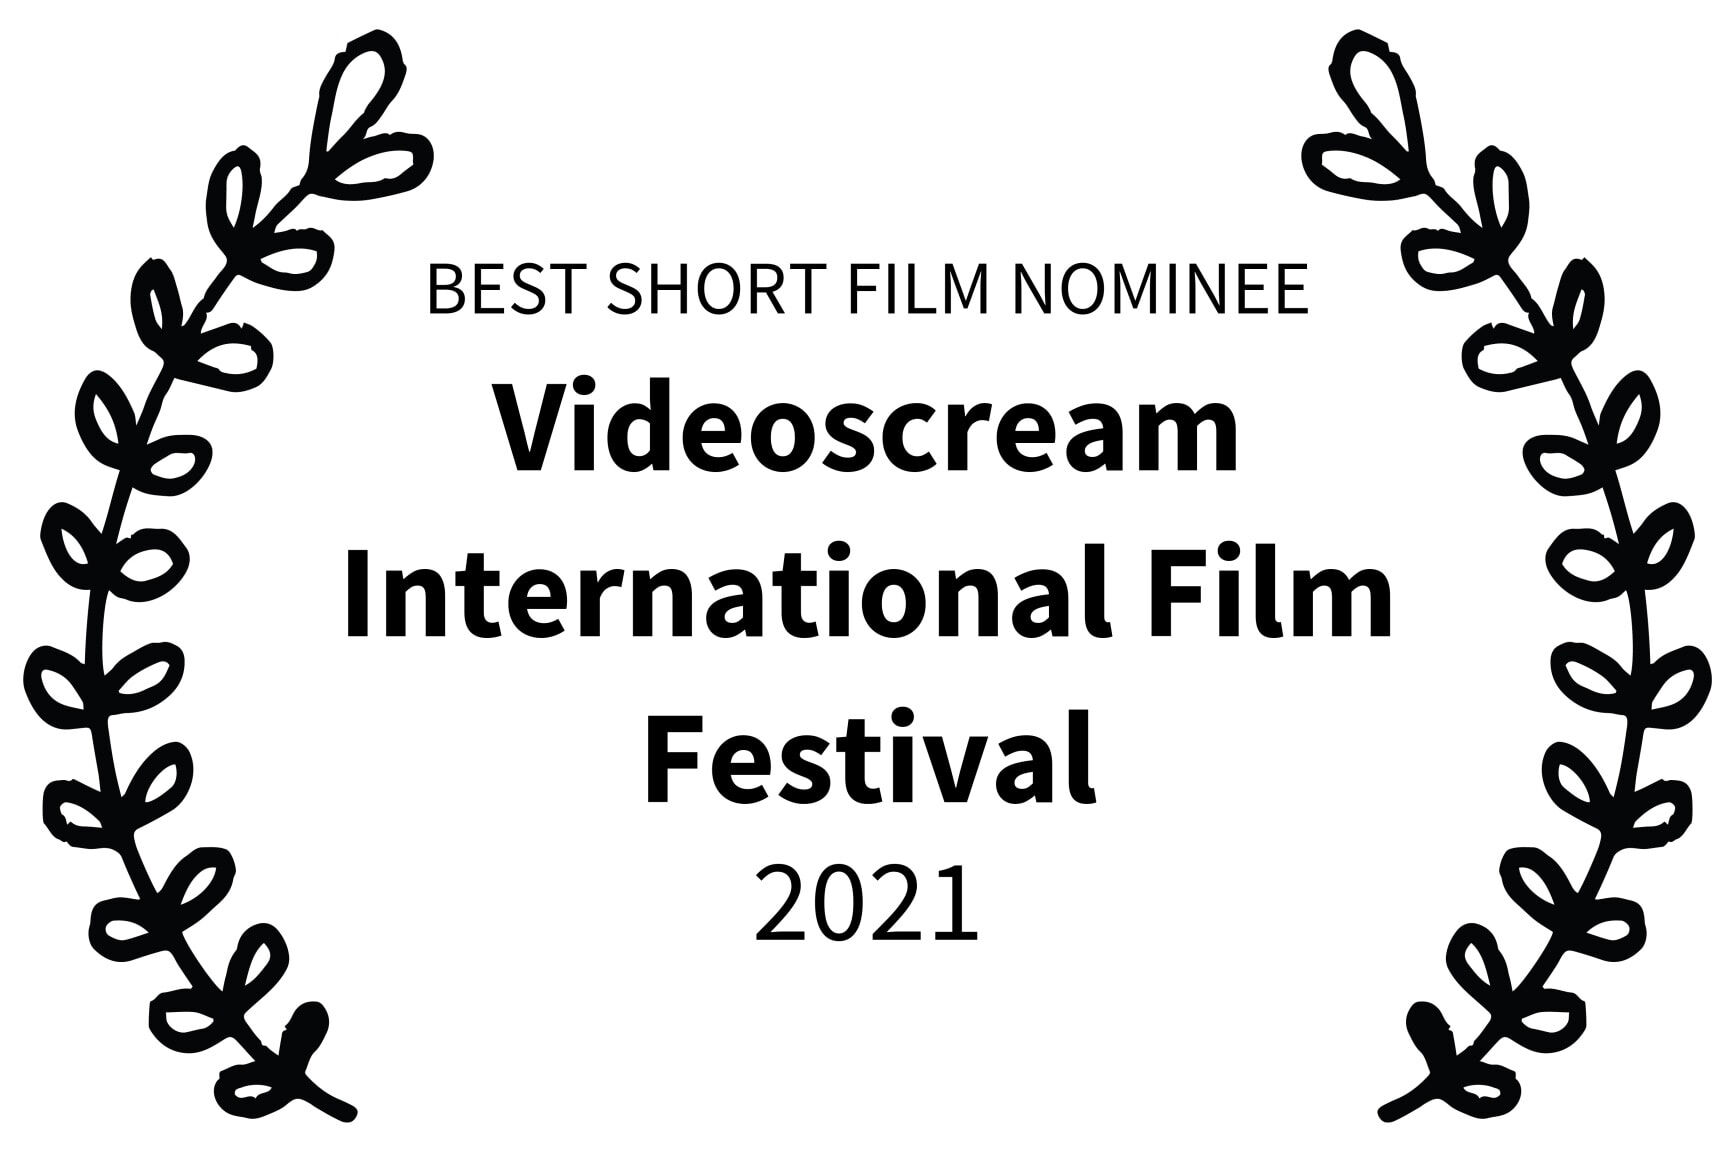 BEST SHORT FILM NOMINEE - Videoscream International Film Festival - 2021